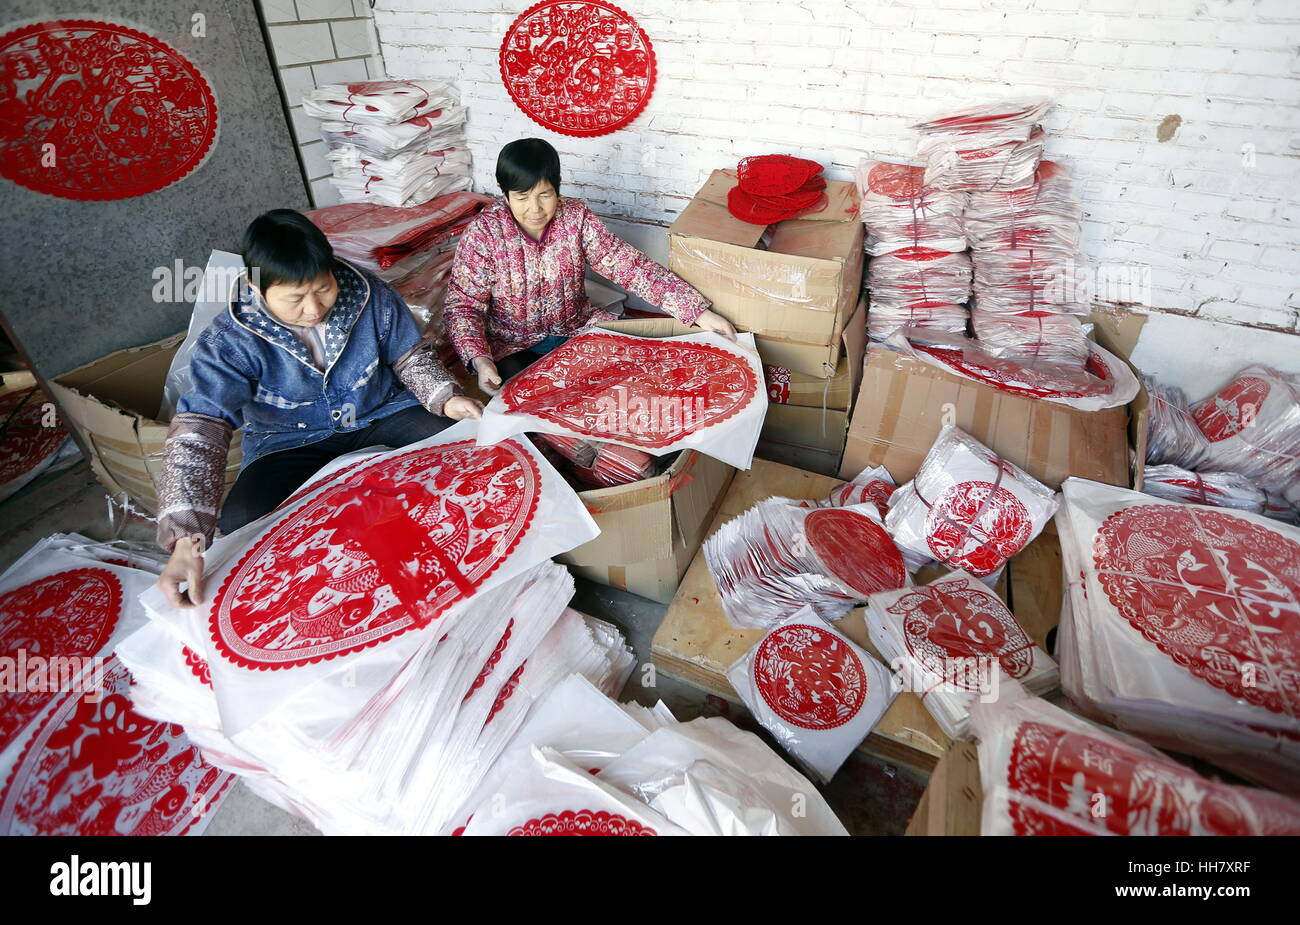 Shijiazhuang, China der Provinz Hebei. 17. Januar 2017. Dorfbewohner Verpacken der fertigen Papierschnitten in einem Dorf in Fucheng Grafschaft, Nord-China Provinz Hebei, 17. Januar 2017. Die Dorfbewohner in Fucheng machen verschiedene Papierschnitt-Werke unter dem Motto "Hahn" zu beliefern den Markt während der kommenden Frühlingsfest oder der chinesischen traditionellen lunar New Year von Hahn, der am 28. Januar dieses Jahres fällt. Bildnachweis: Zhu Xudong/Xinhua/Alamy Live-Nachrichten Stockfoto